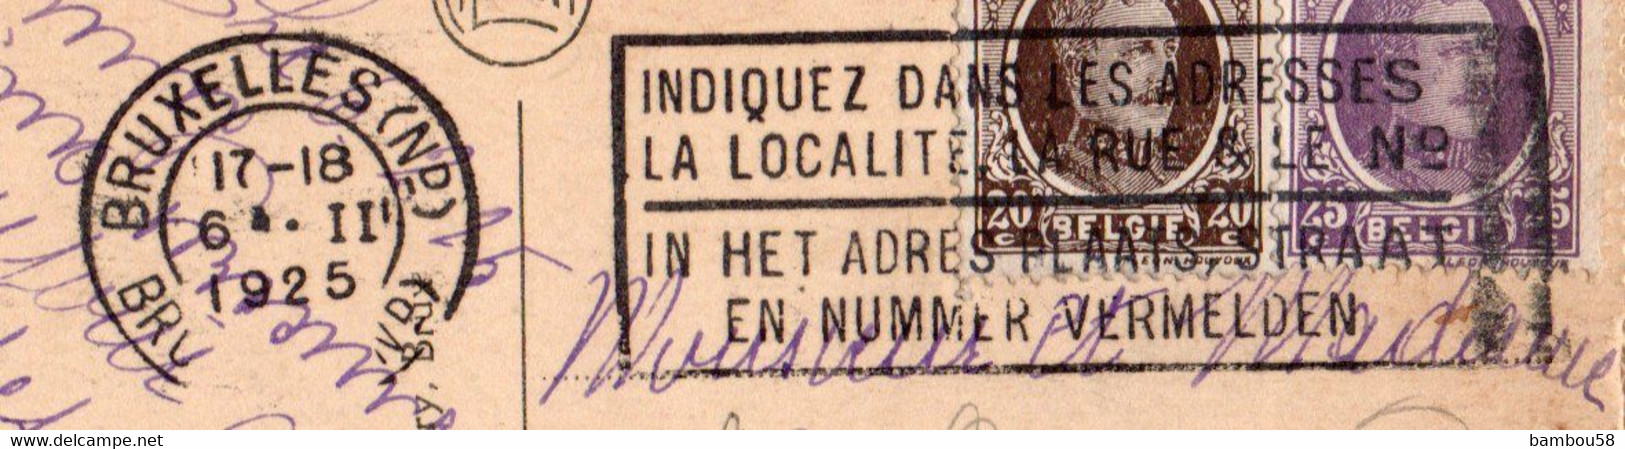 BRUXELLES * BELGIQUE * COLONNE DU CONGRES * TOMBEAU DU SOLDAT INCONNU 11.11.1922 * FLAMME - Aeroporto Bruxelles